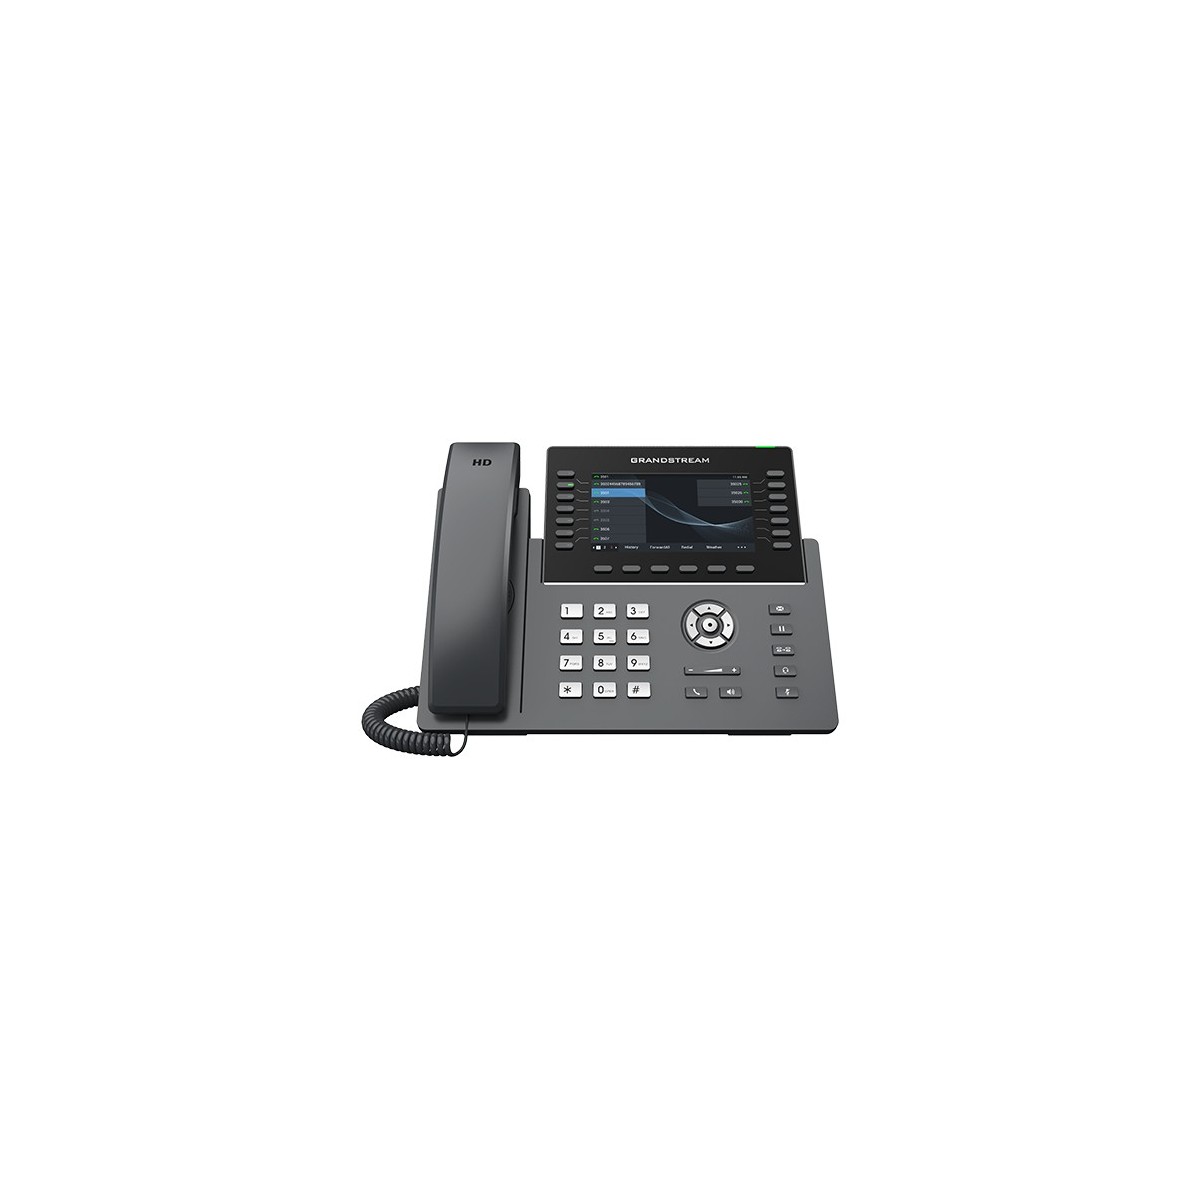 Grandstream IP Telefon GRP2650 inkl. Netzteil - VoIP-Telefon